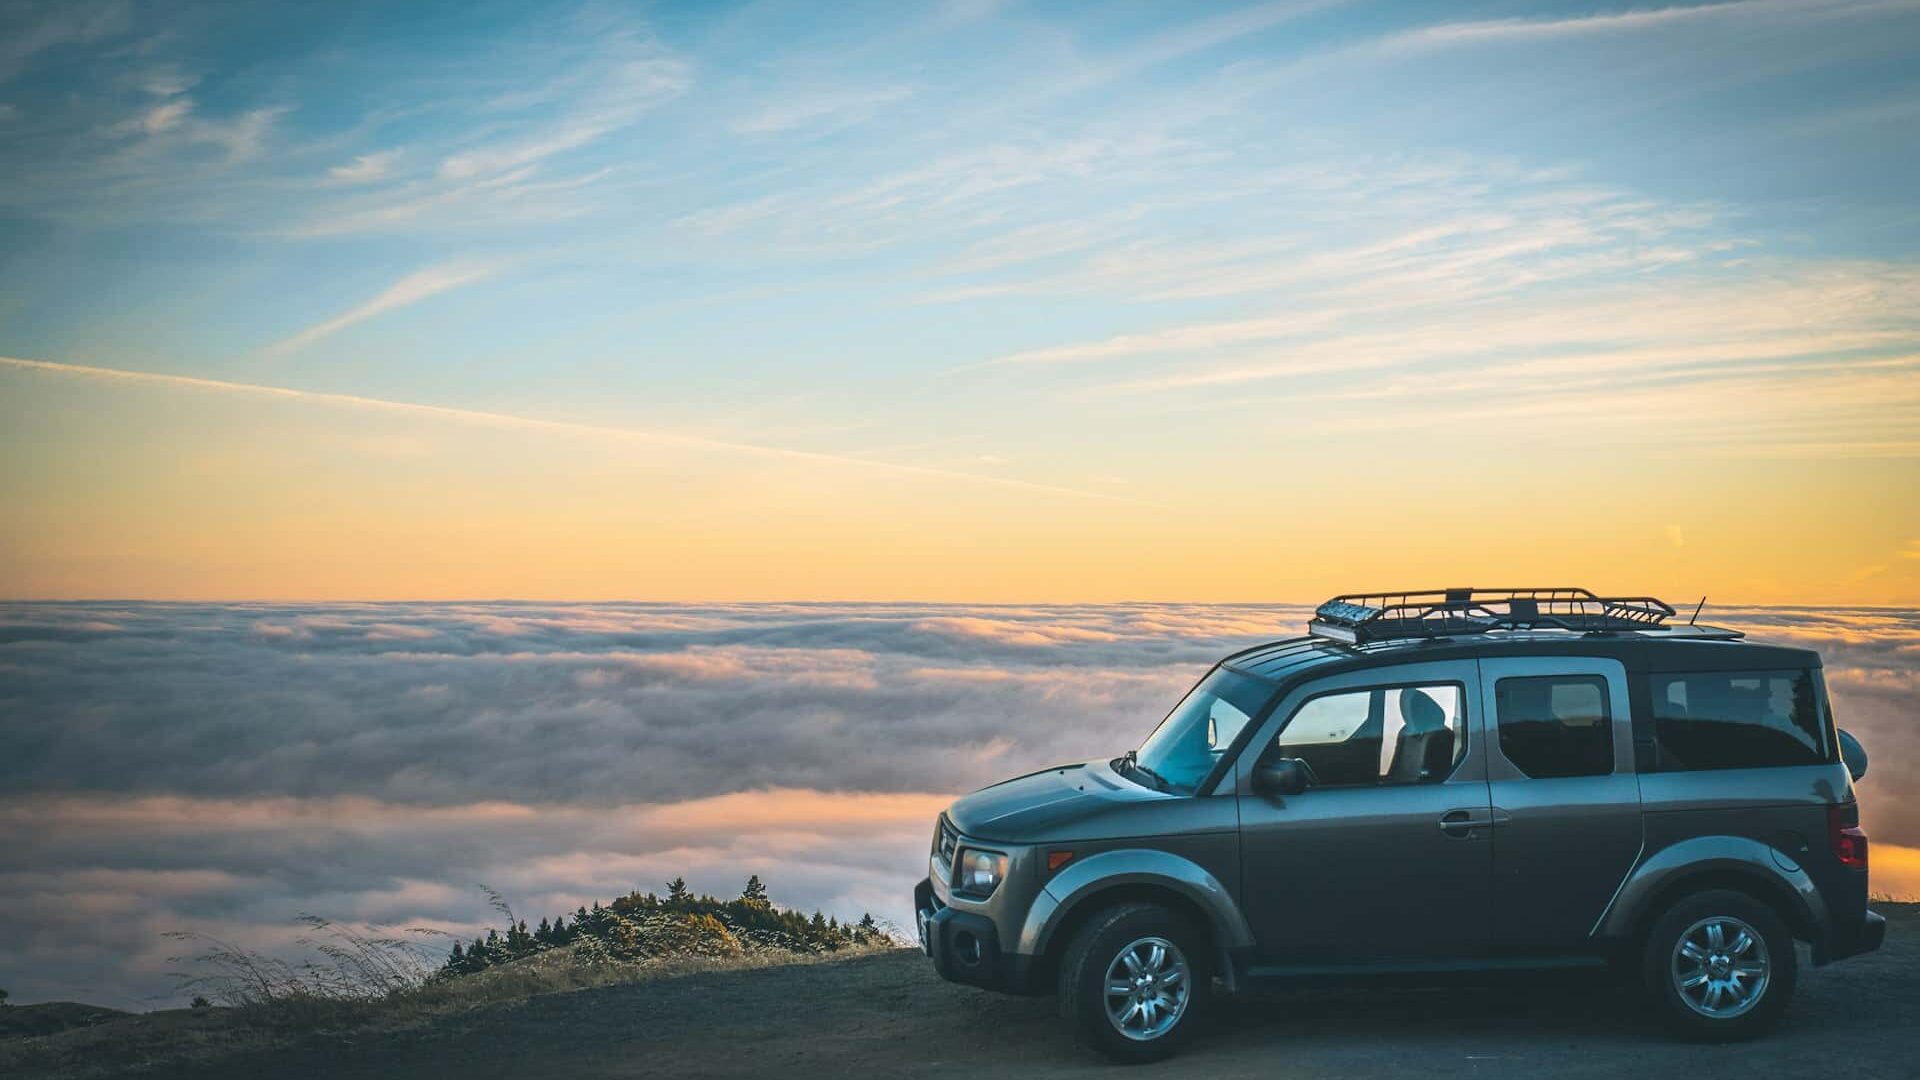 Carro estacionado em um mirante com núvens no horizonte e o céu com o pôr do sol. Foto de Casey Horner via Unsplash